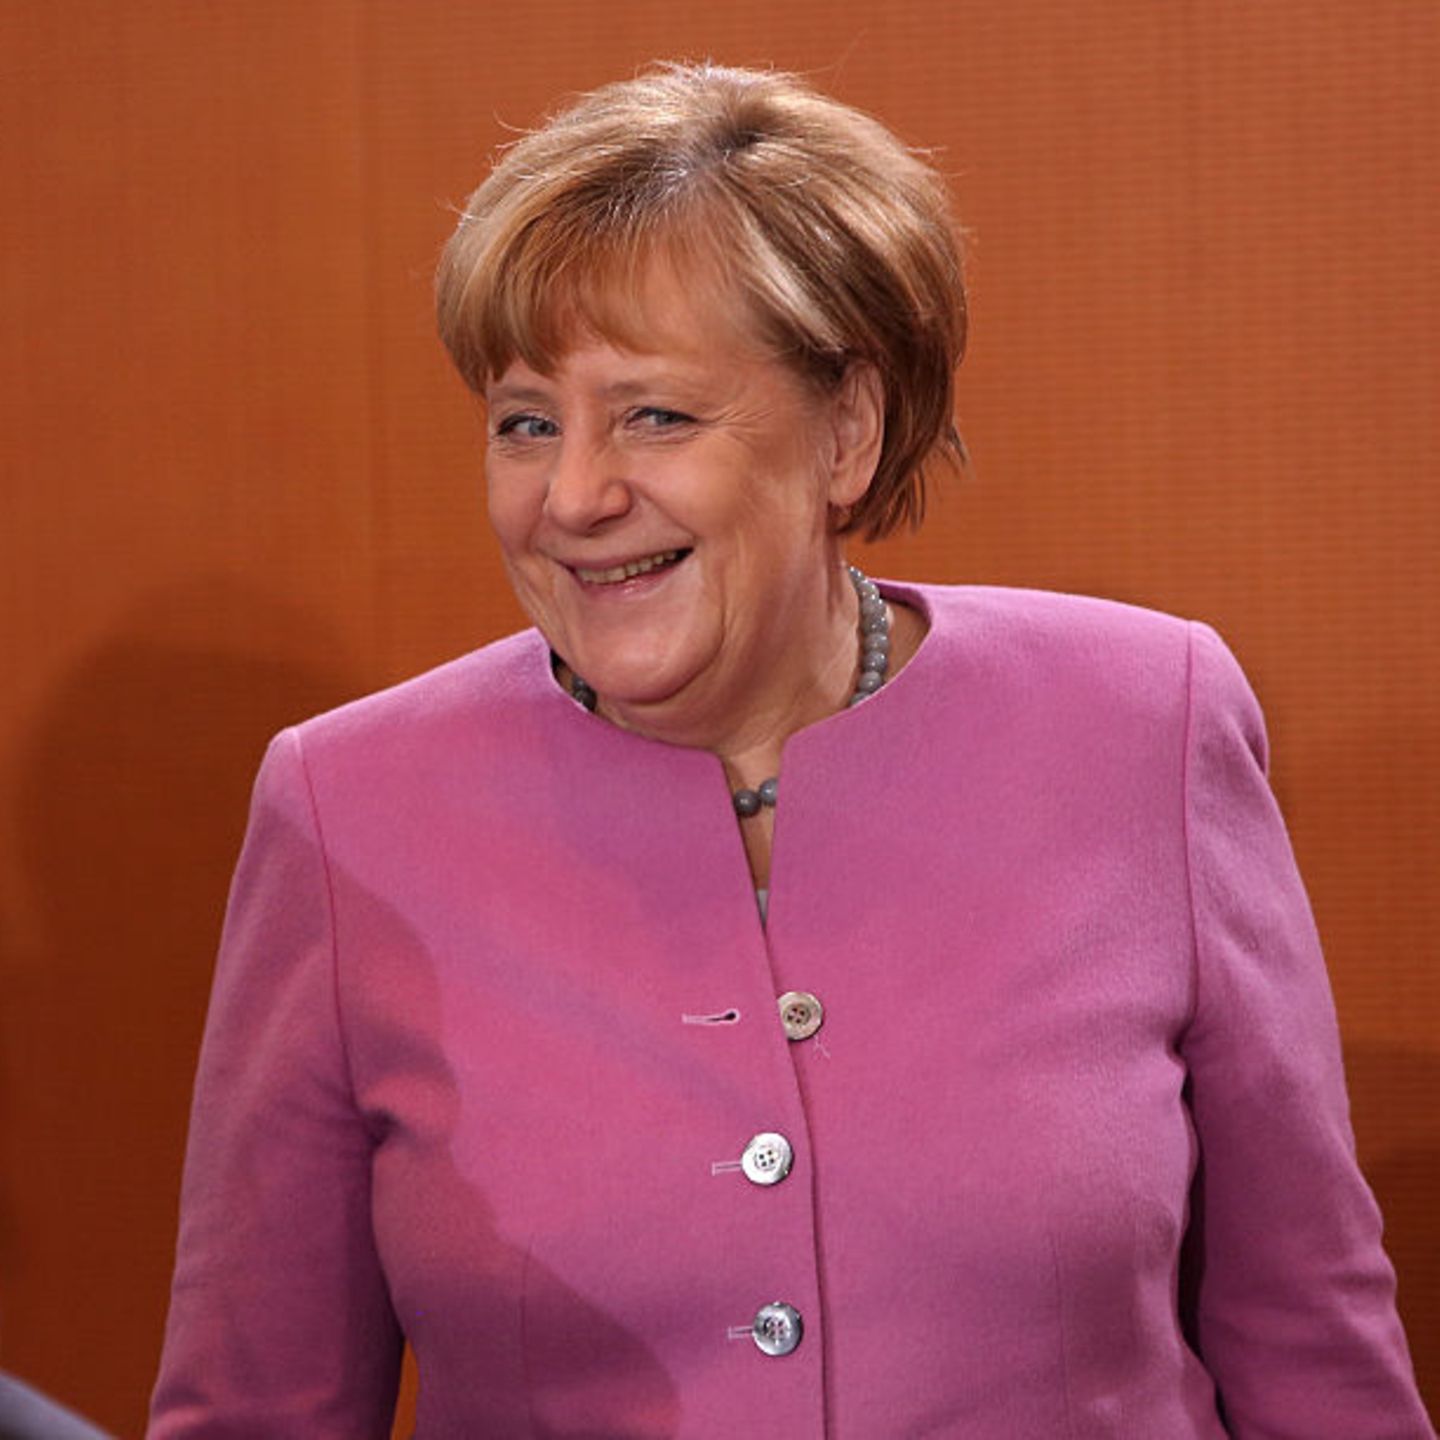  Angela Merkel Hintergrundbild 1440x1440. Nach der Wahl: Was wir von Angela Merkel lernen können